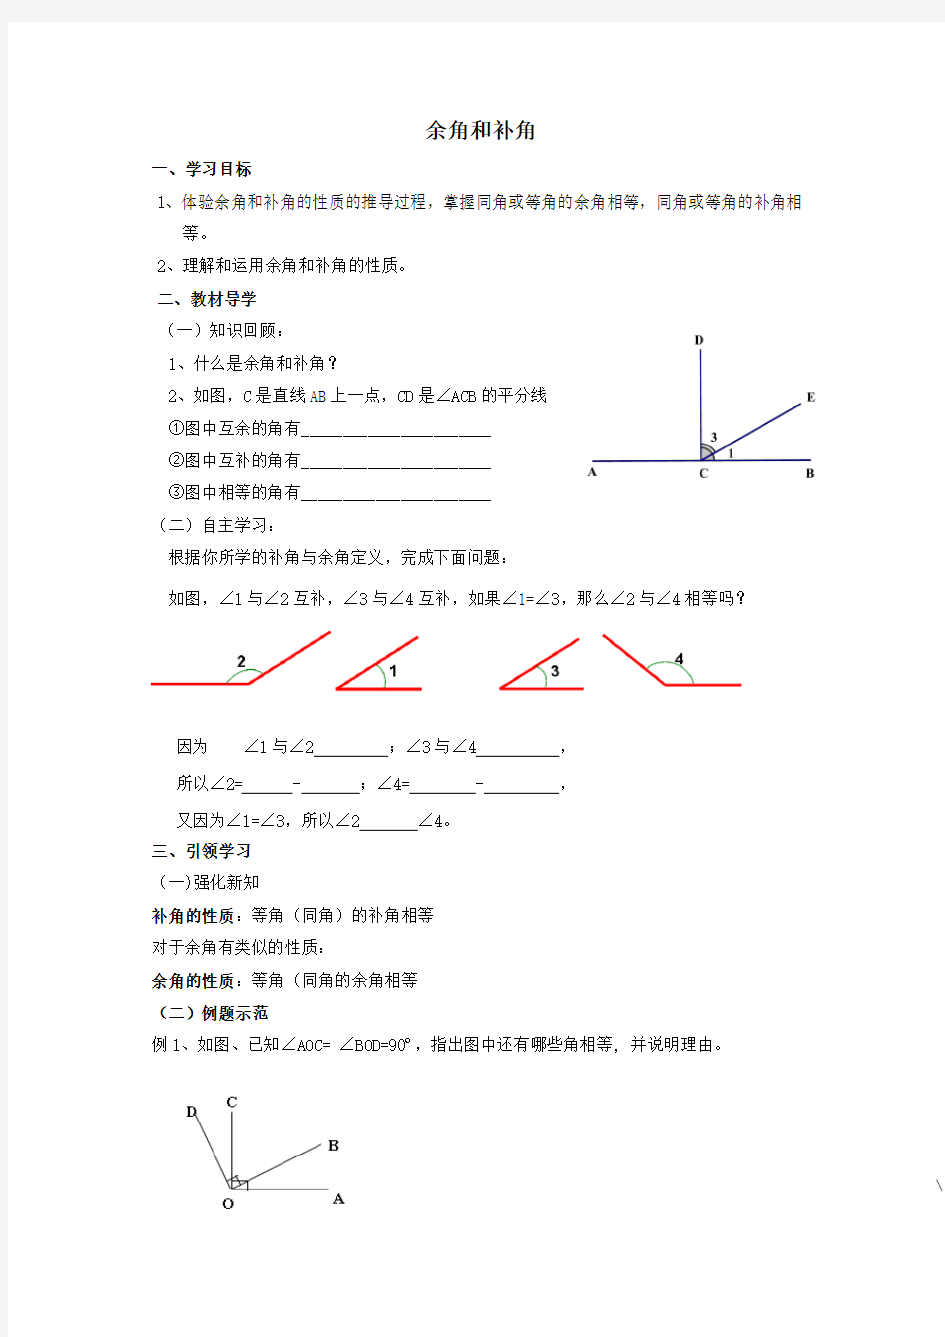 【数学】七年级上册数学-余角和补角(教案及练习题) 